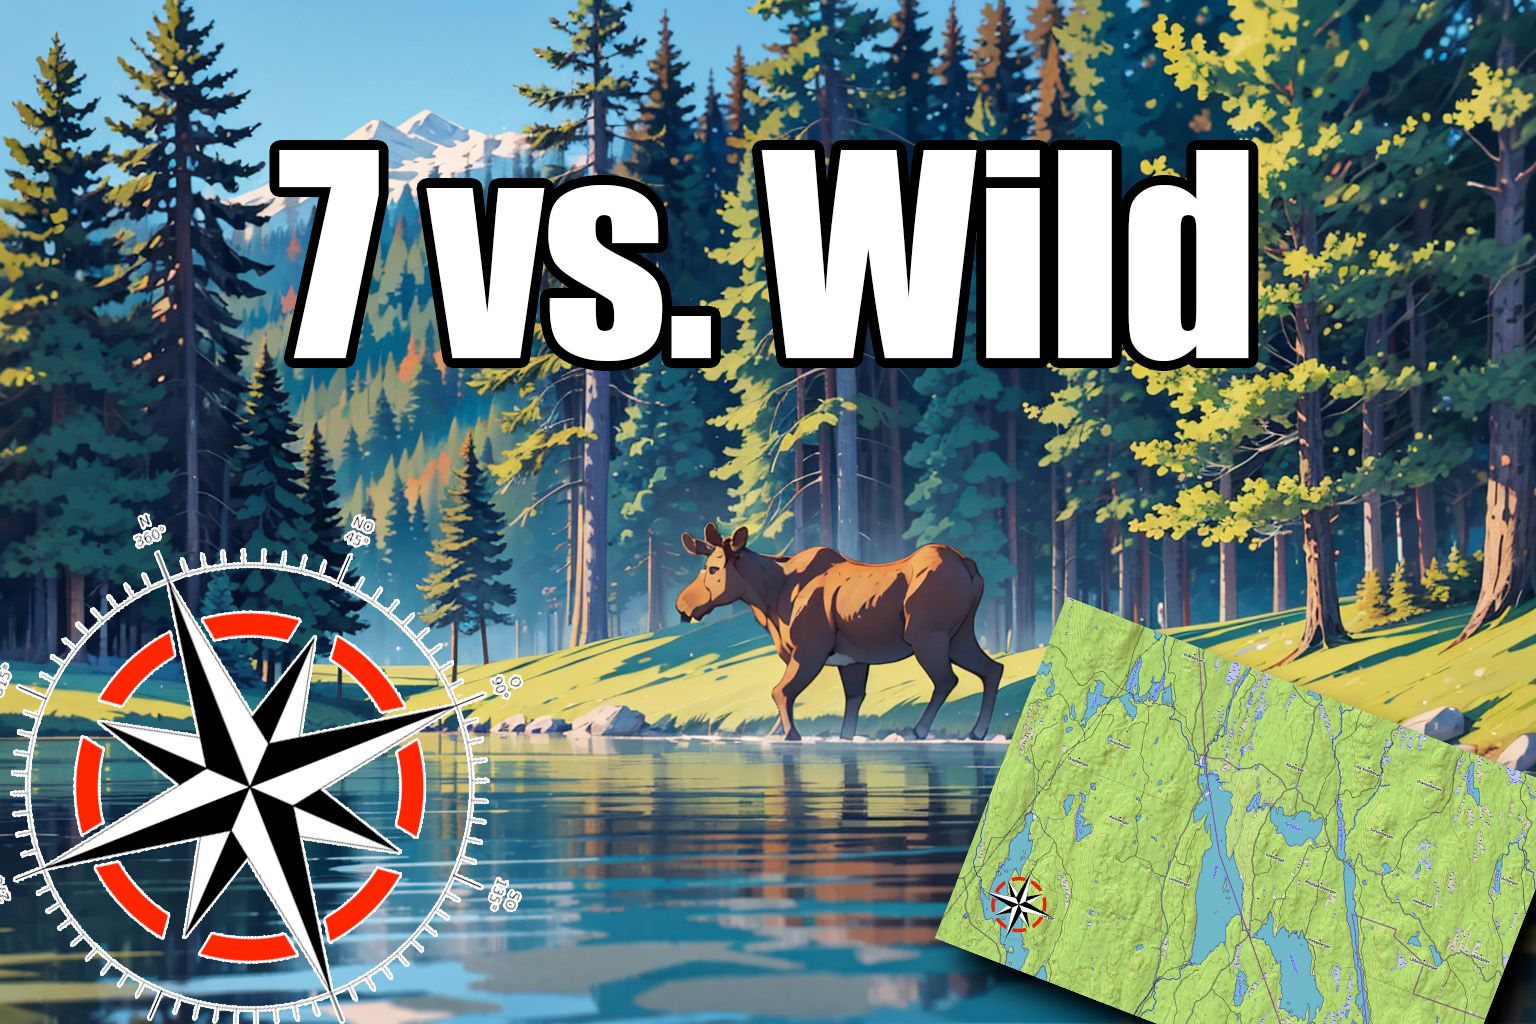 7 vs. Wild: Where did 7 vs. Wild take place?